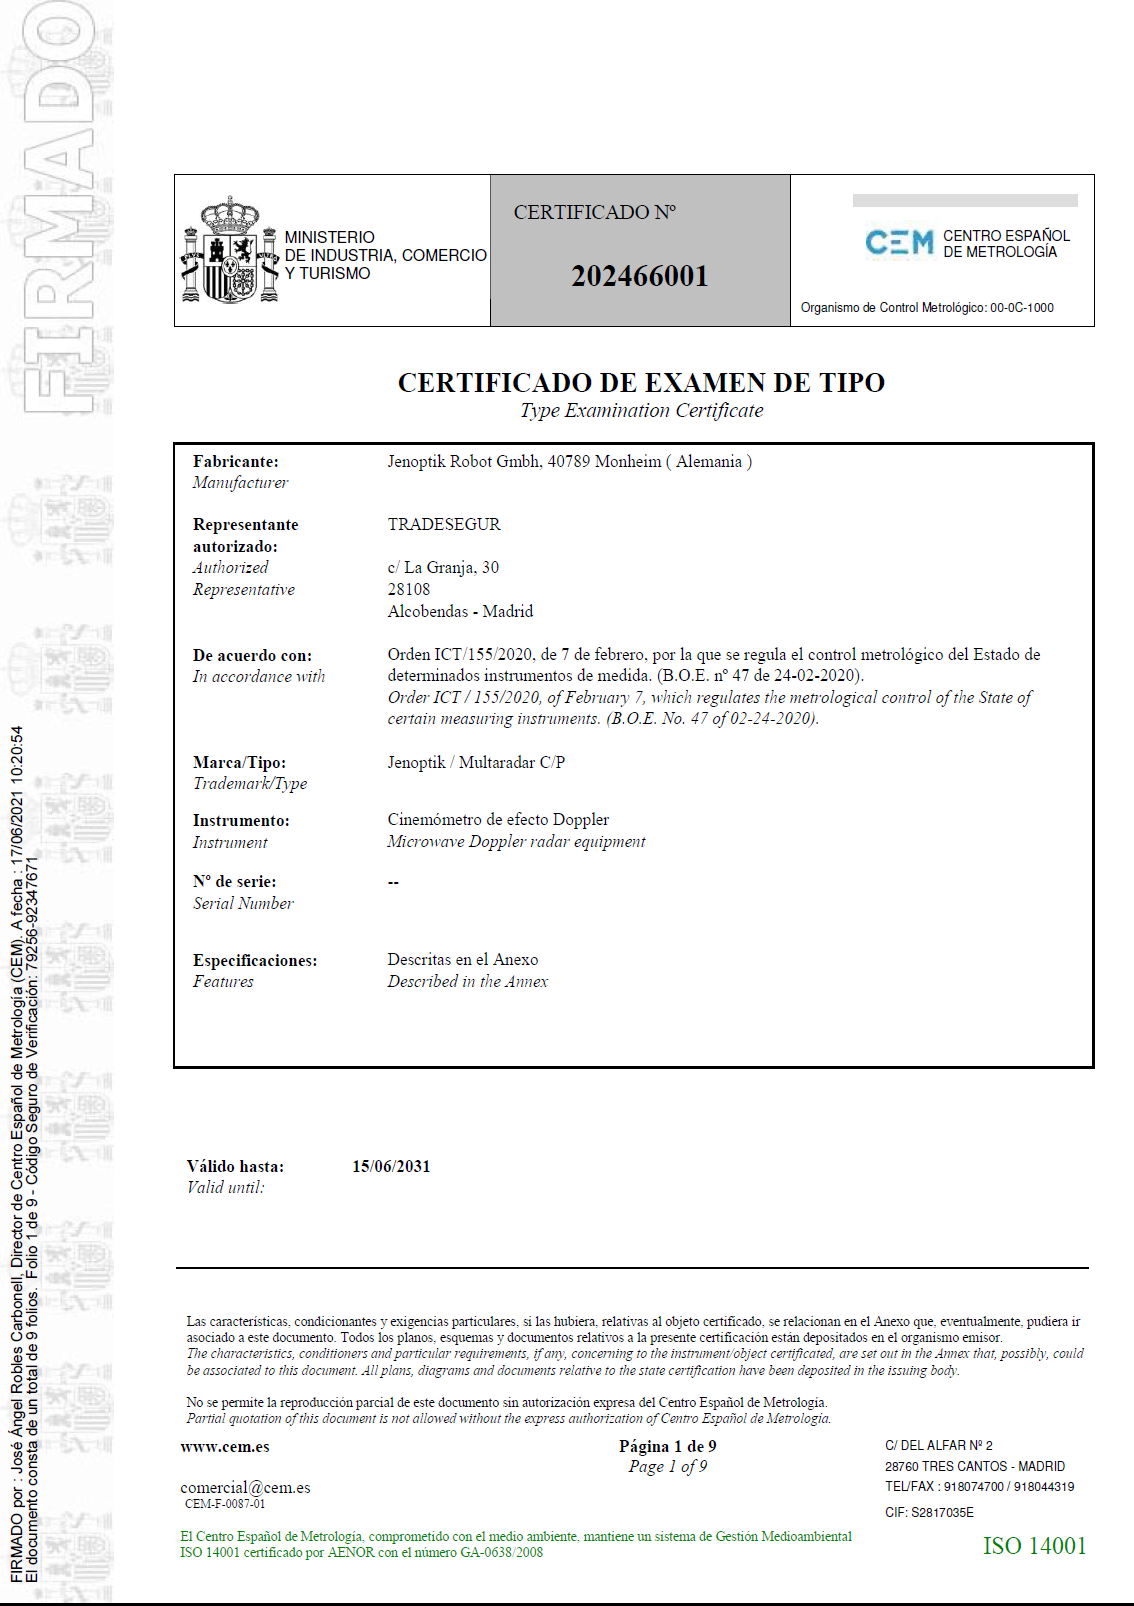 Certificado de examen de tipo nº 202466001